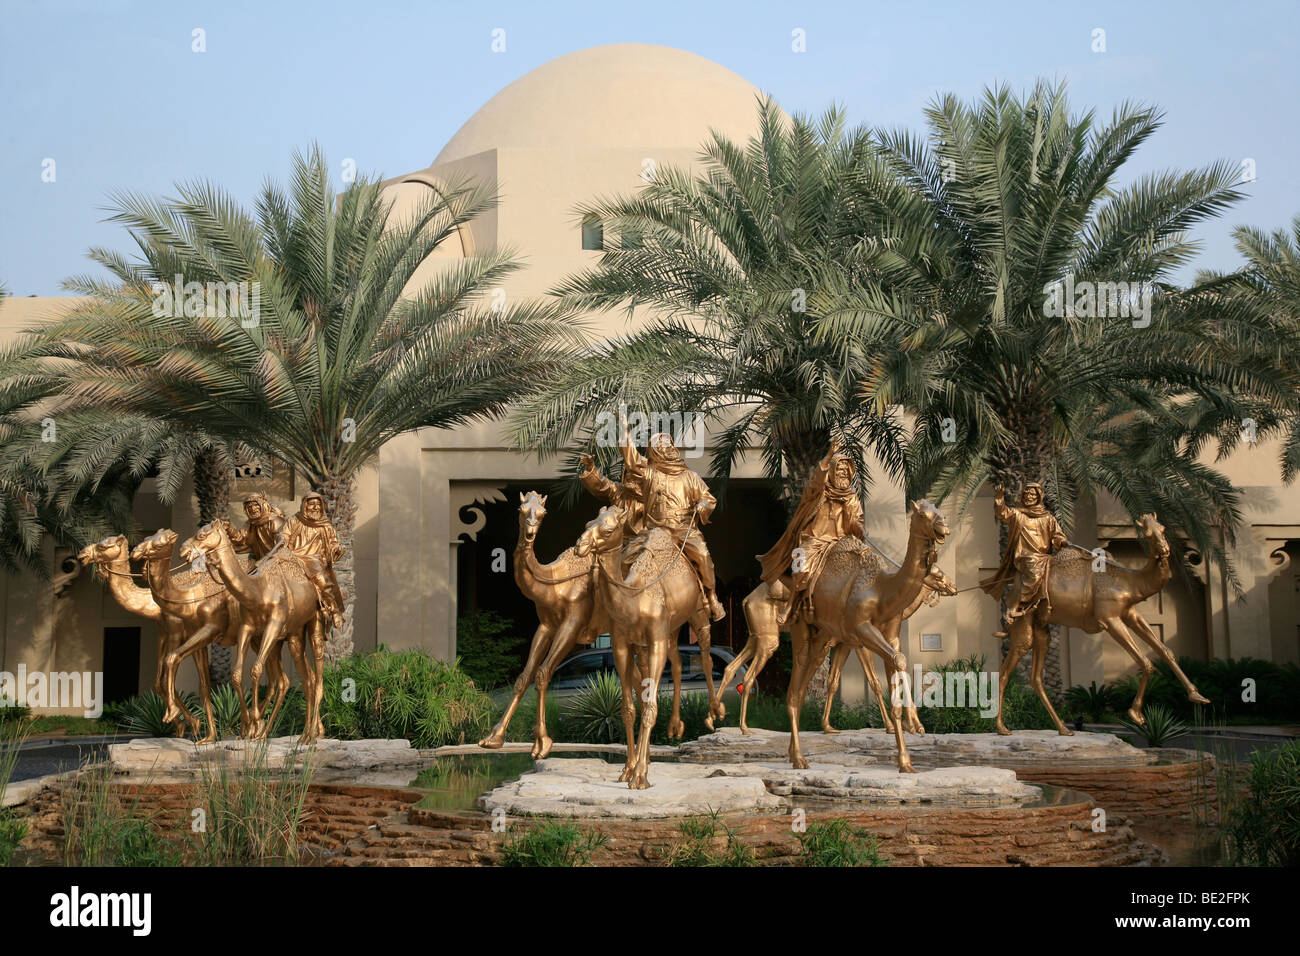 Royal Mirage Hotel Dubai UAE Middle east Stock Photo